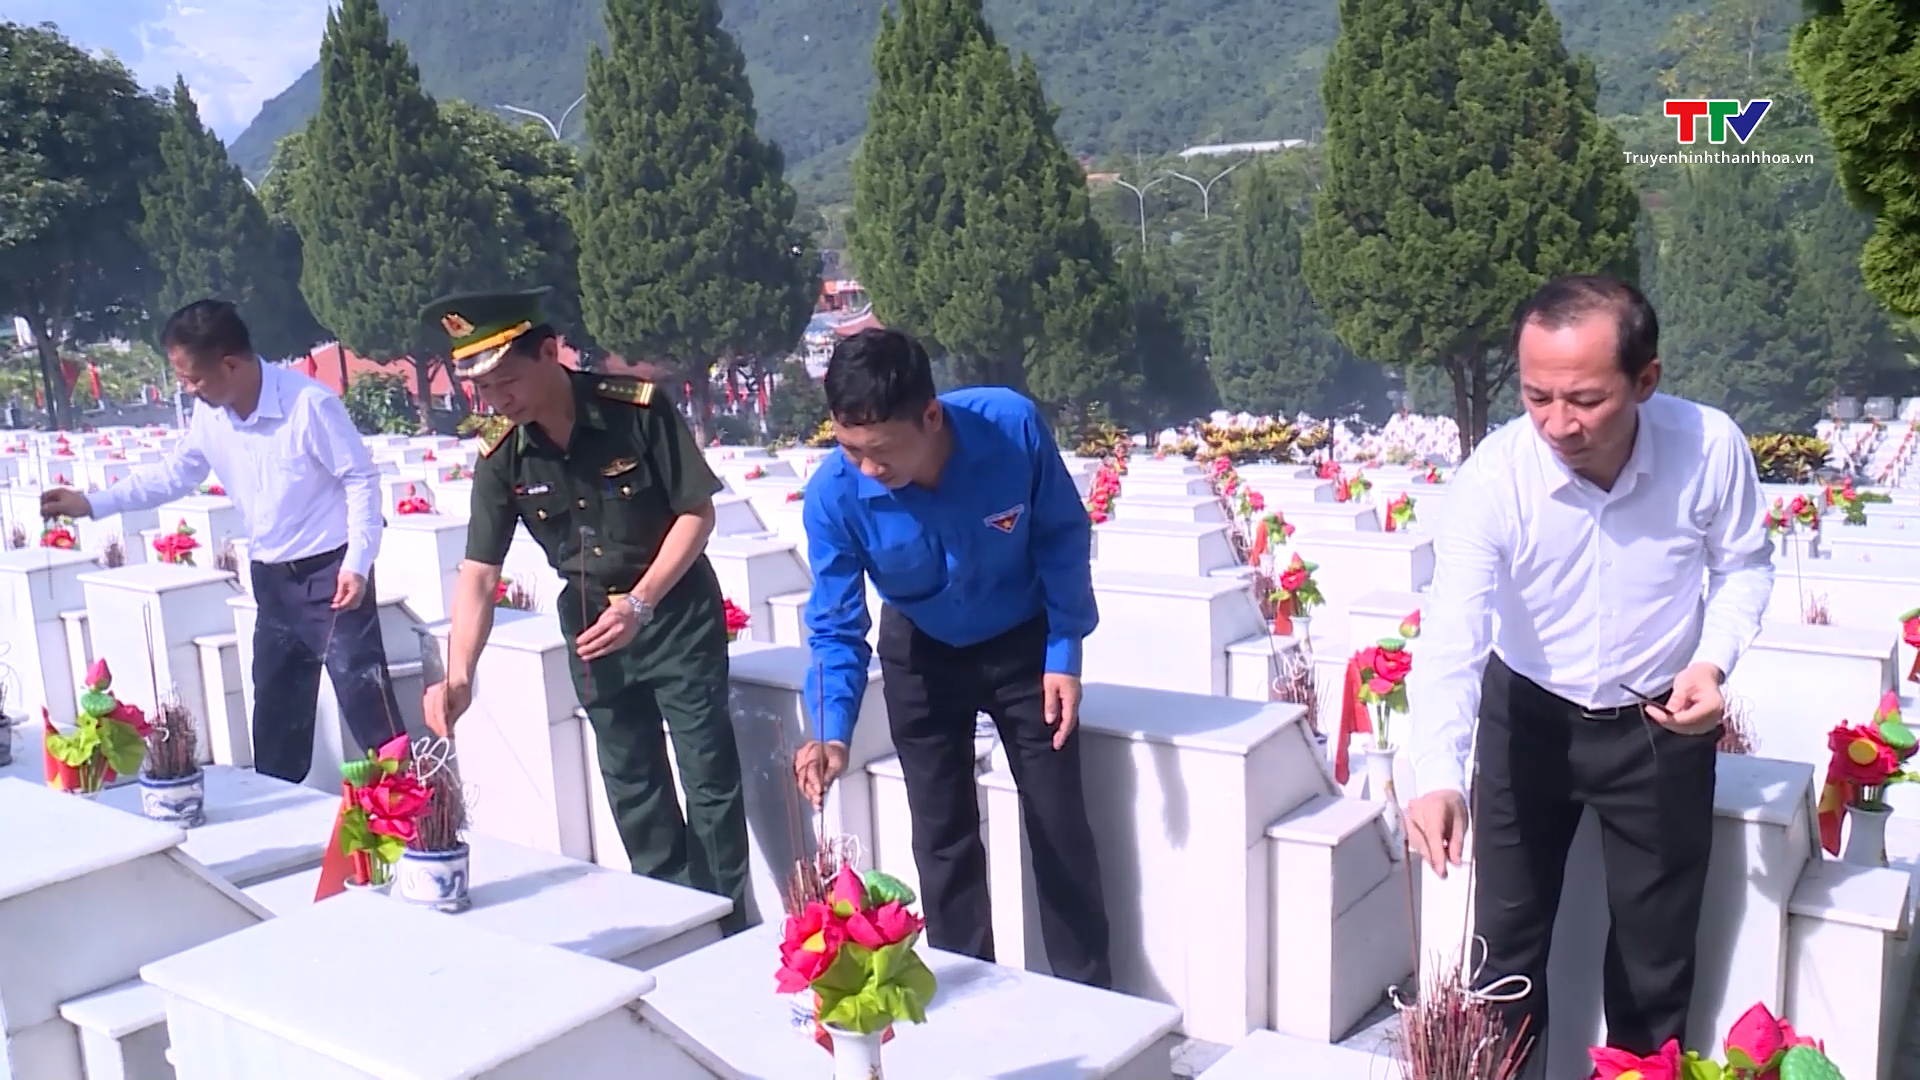 Đoàn đại biểu tỉnh Thanh Hóa viếng các anh hùng, liệt sỹ tại tỉnh Hà Giang- Ảnh 4.